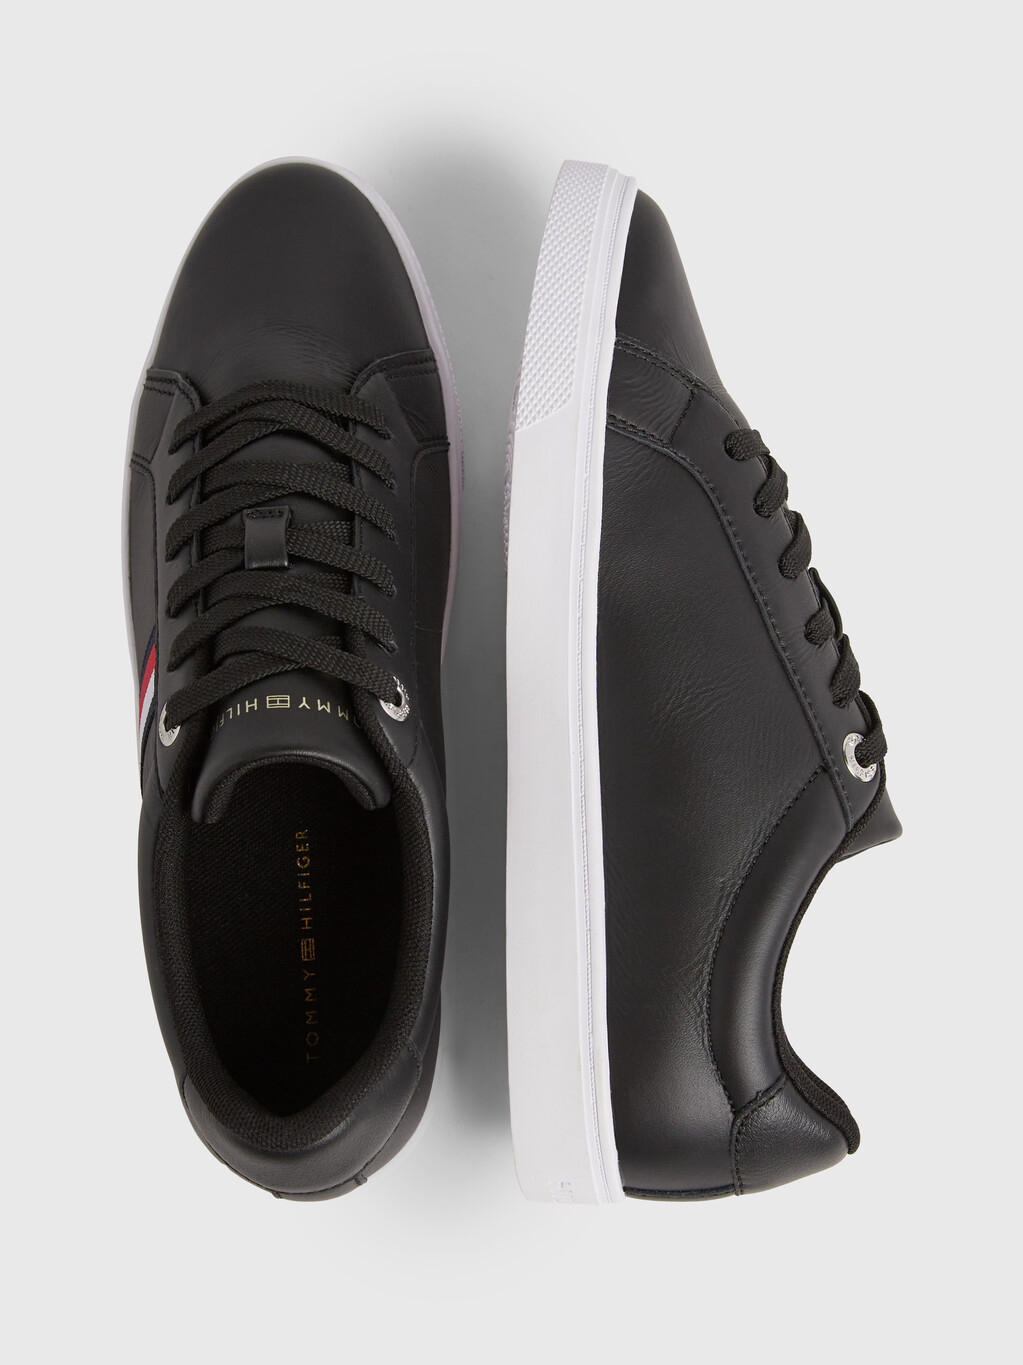 Essential 經典條紋皮革運動鞋, Black, hi-res